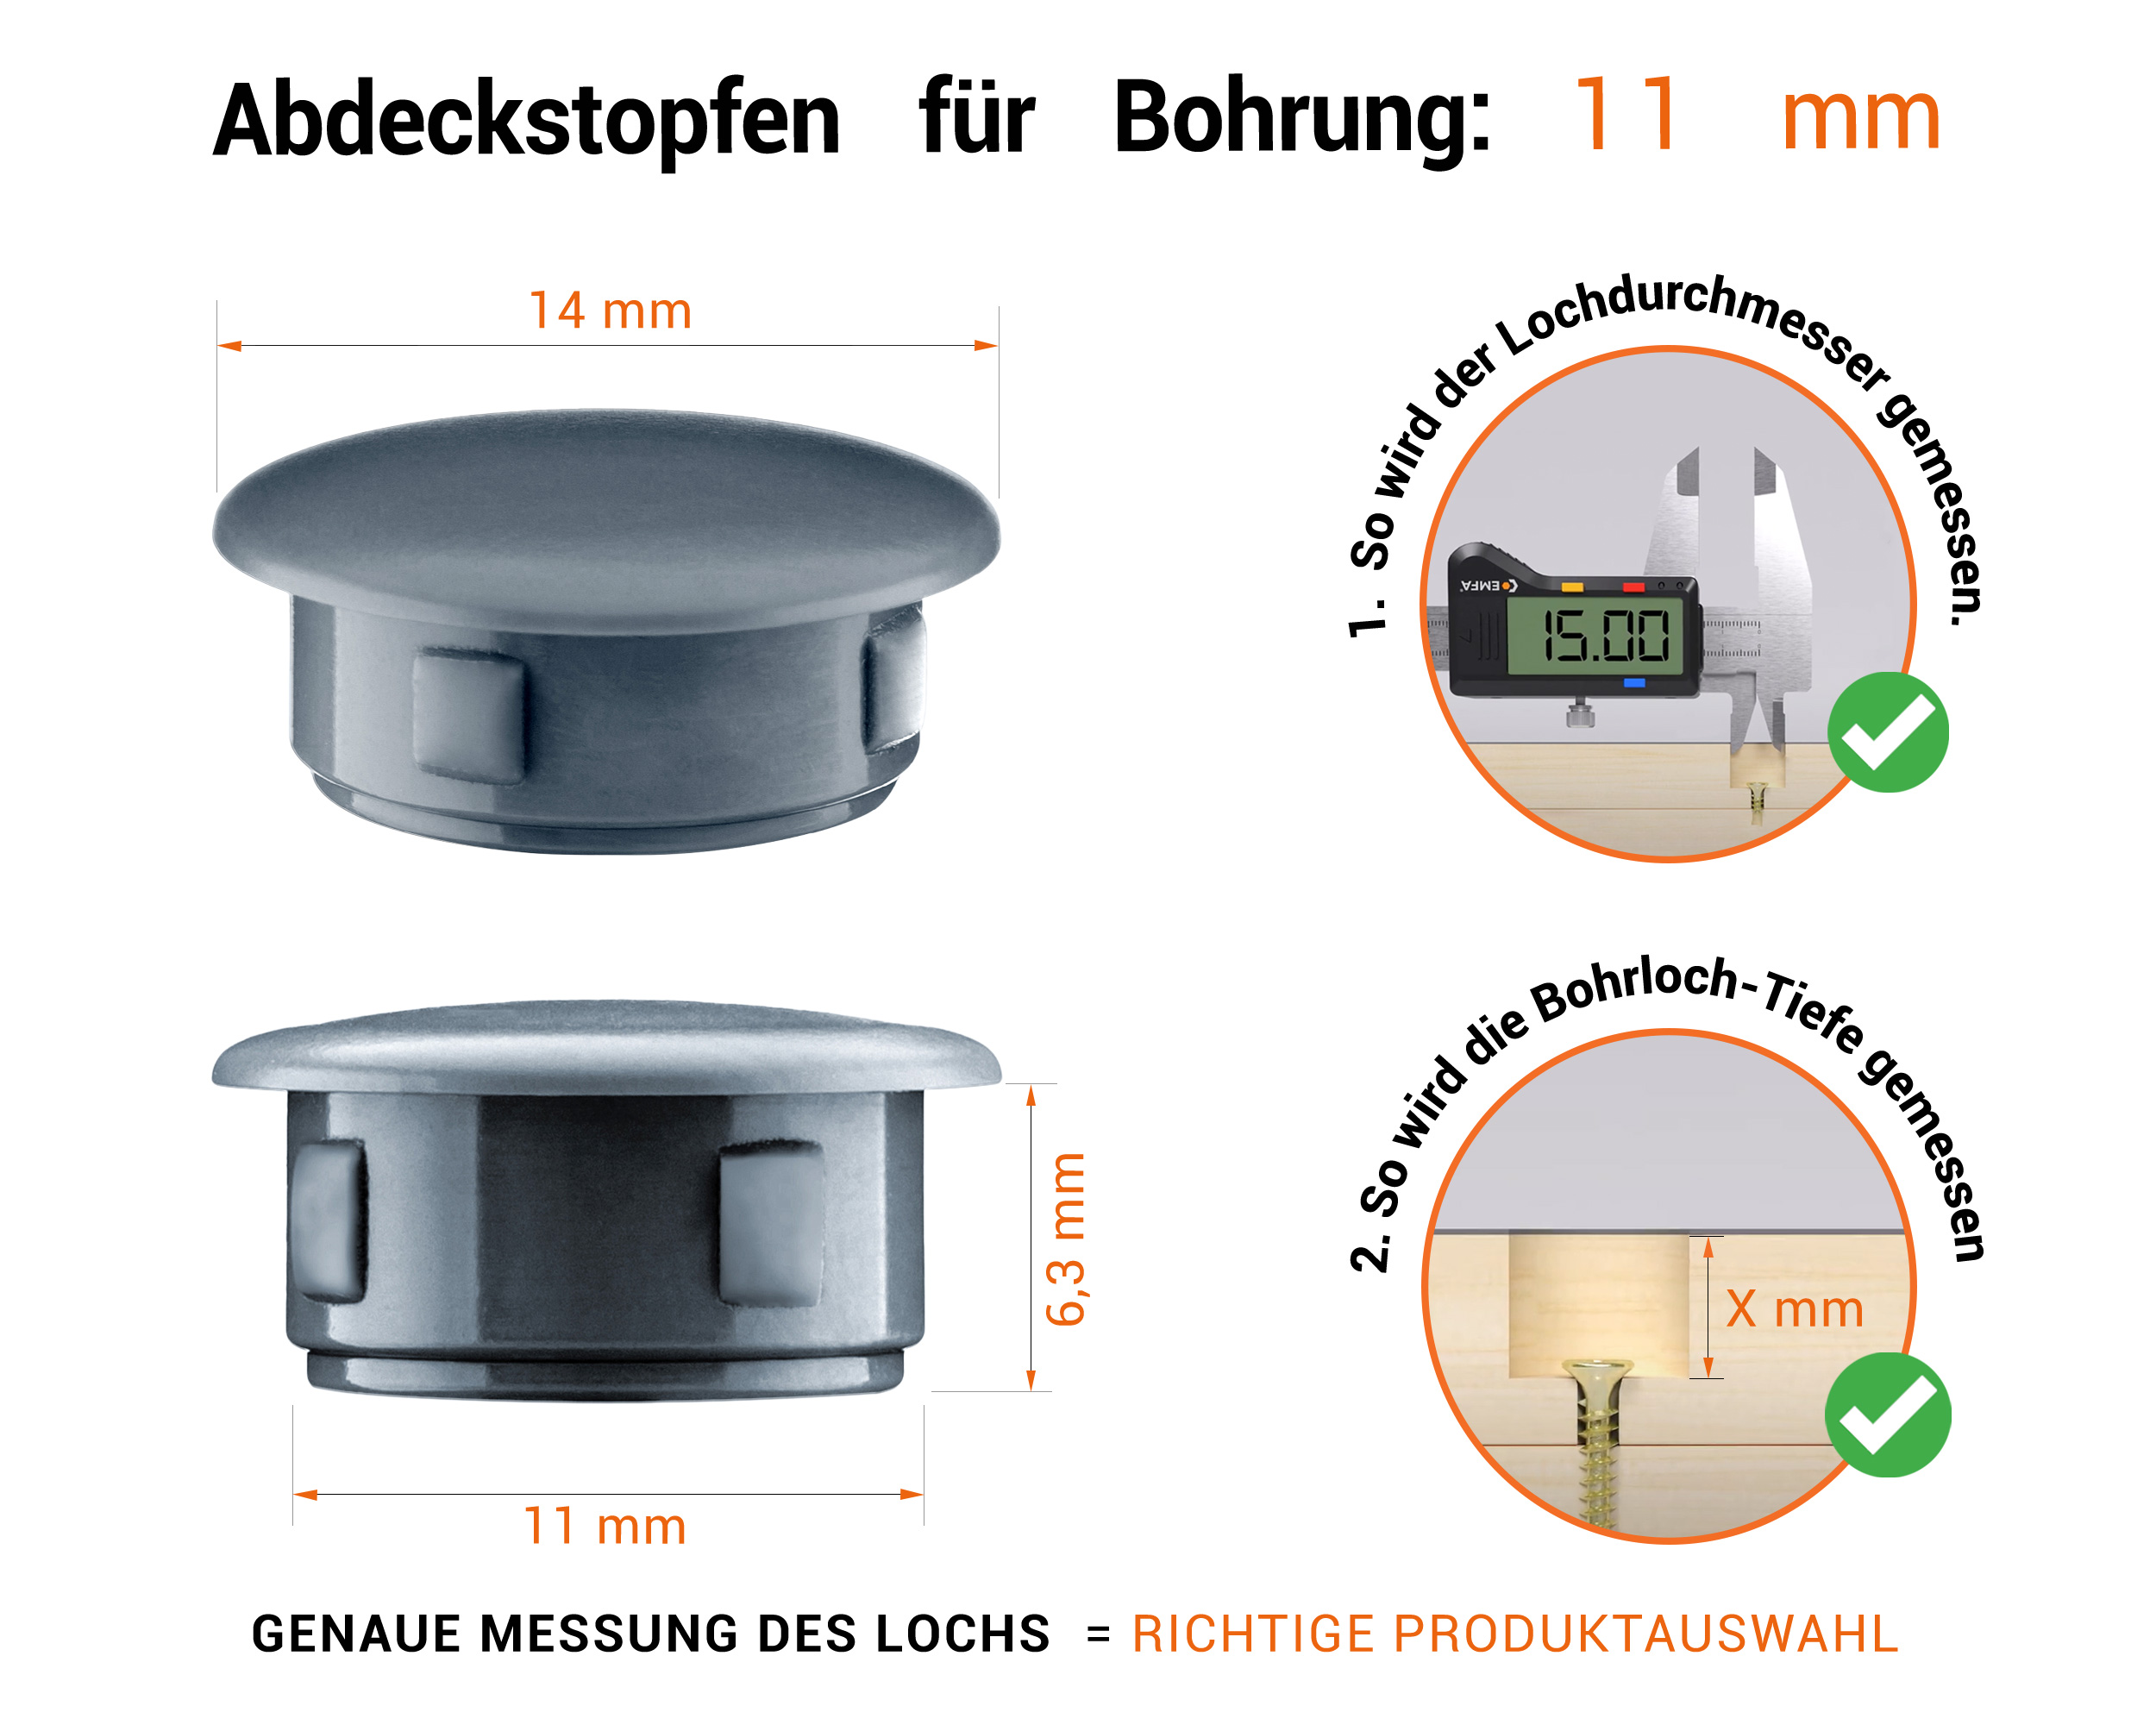 Anthrazite Blindstopfen aus Kunststoff für Bohrung 11 mmmm mit technischen Abmessungen und Anleitung für korrekte Messung